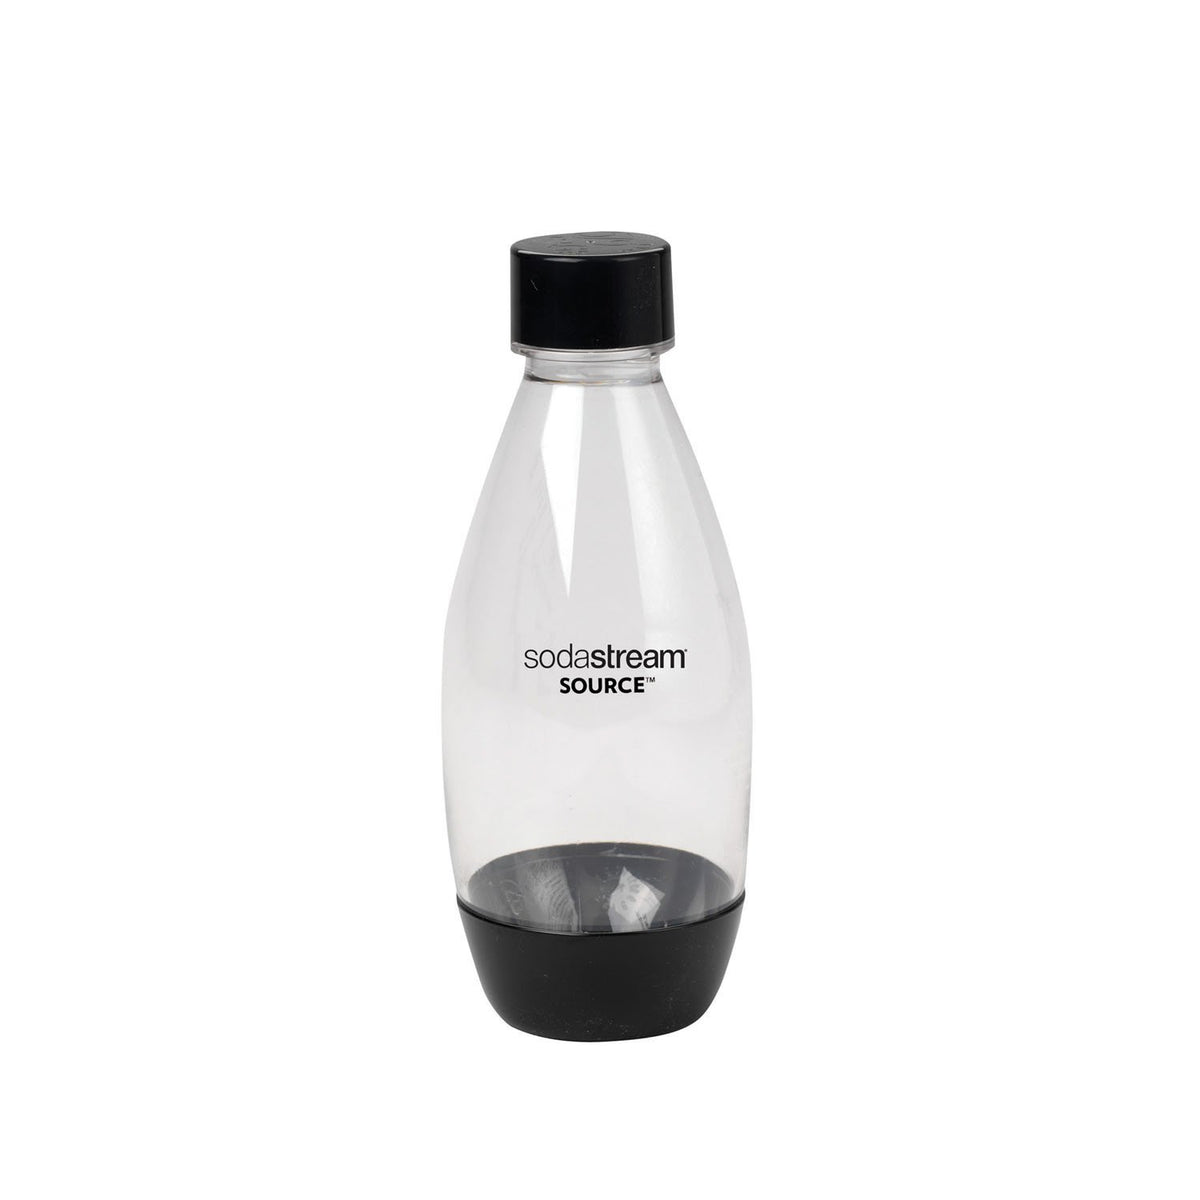 SodaStream 1748221010 Black Source Carbonating Bottles, 0.5 L, 2 Pack